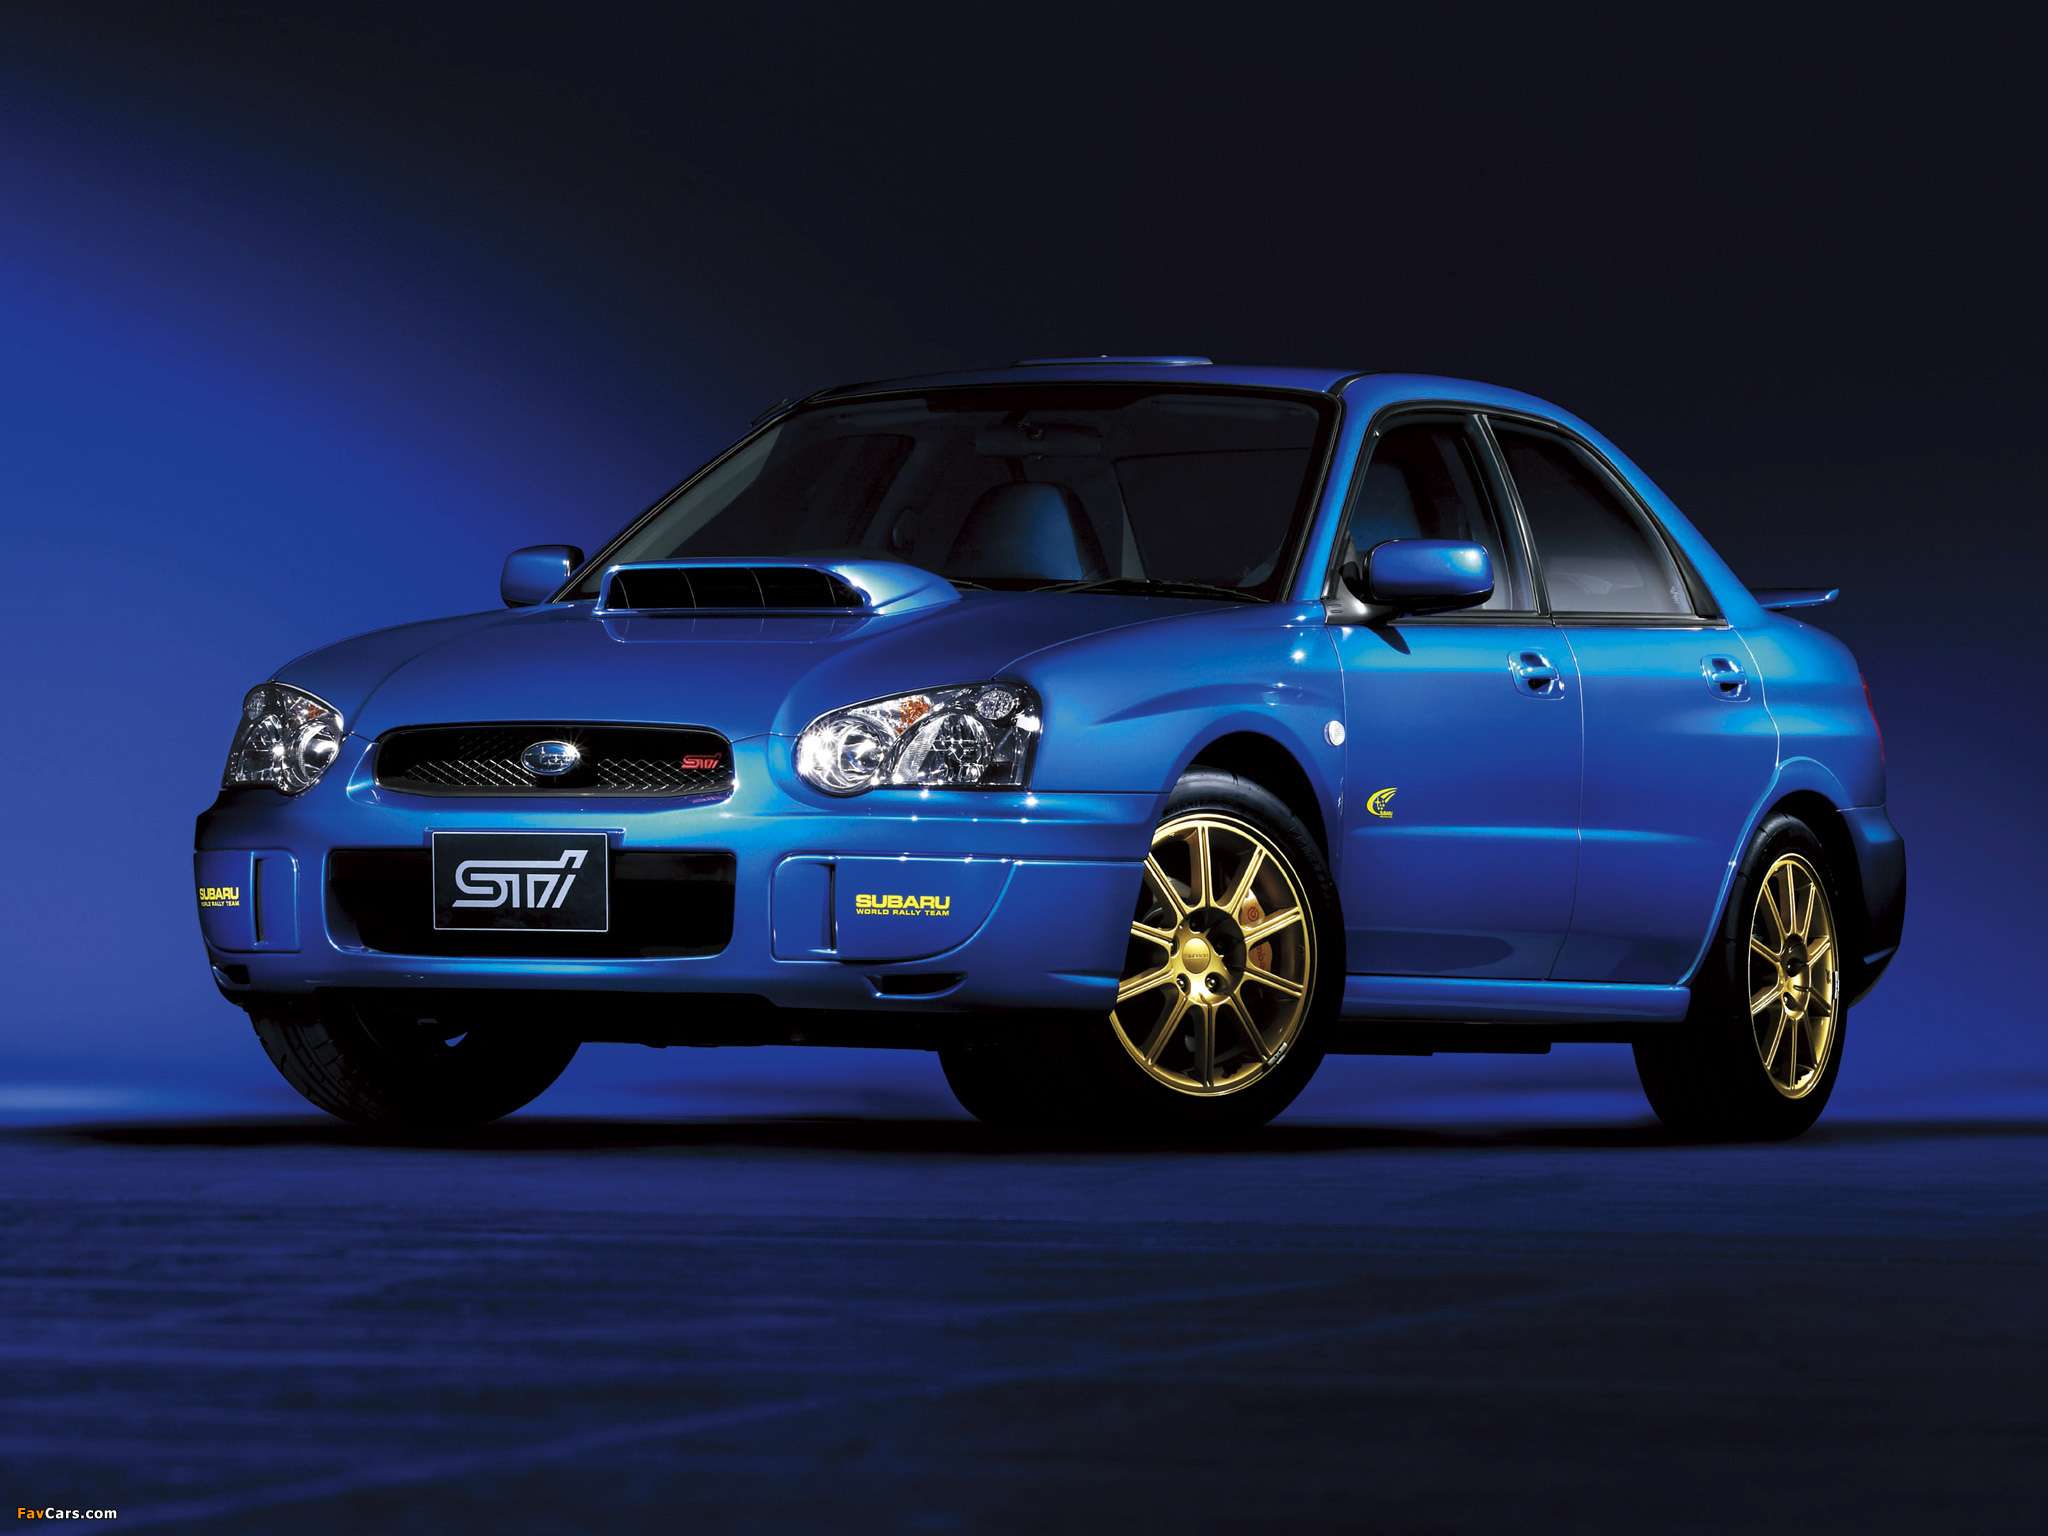 Wrx sti 2004. Subaru Impreza WRX STI 2003. Subaru Impreza WRX STI 2004. Impreza WRX STI 2004. Subaru Impreza WRX 2003.